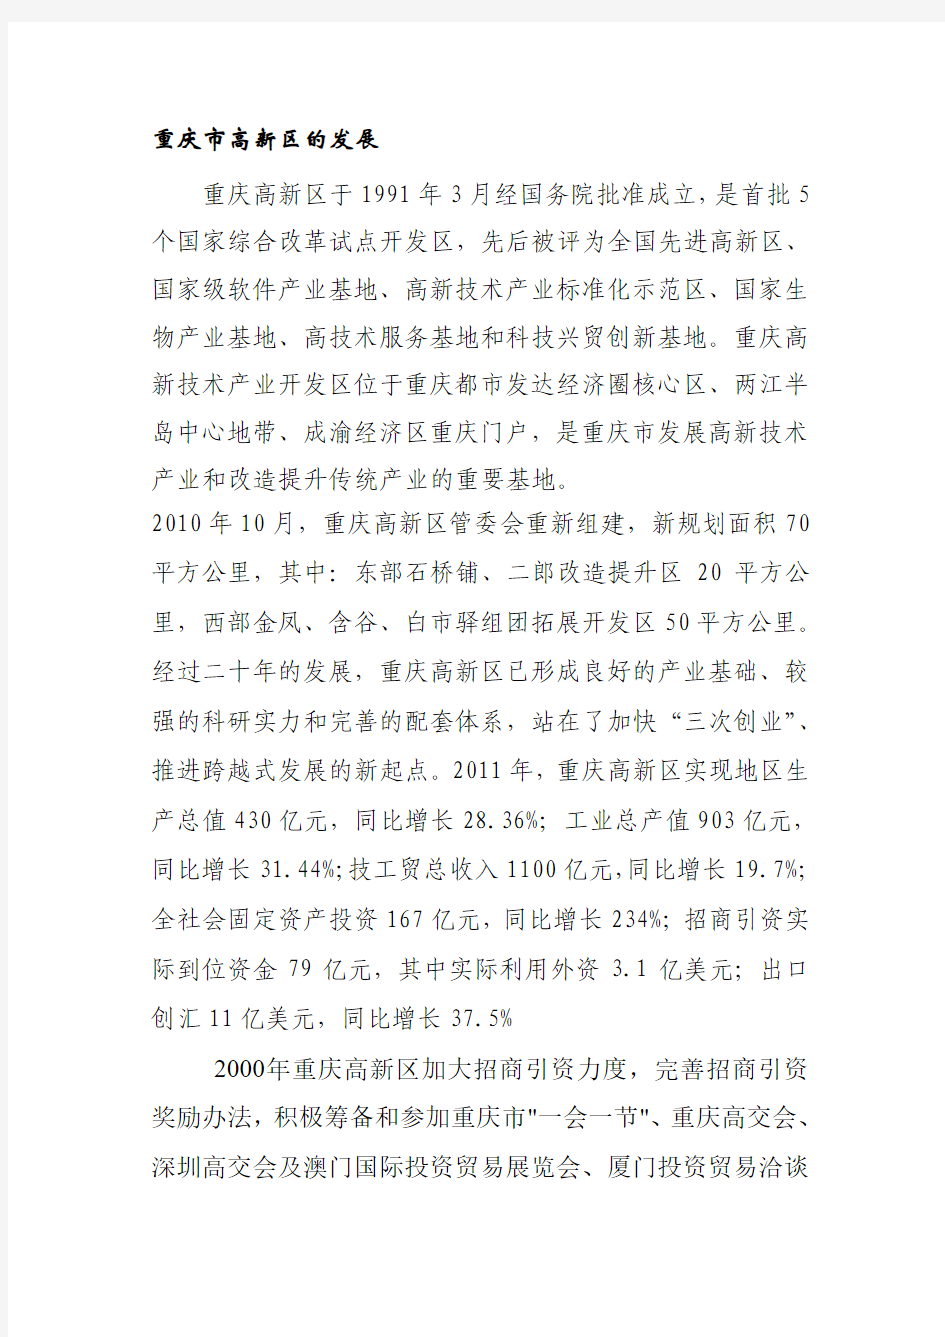 重庆市五大商圈及房地产开发企业前10强